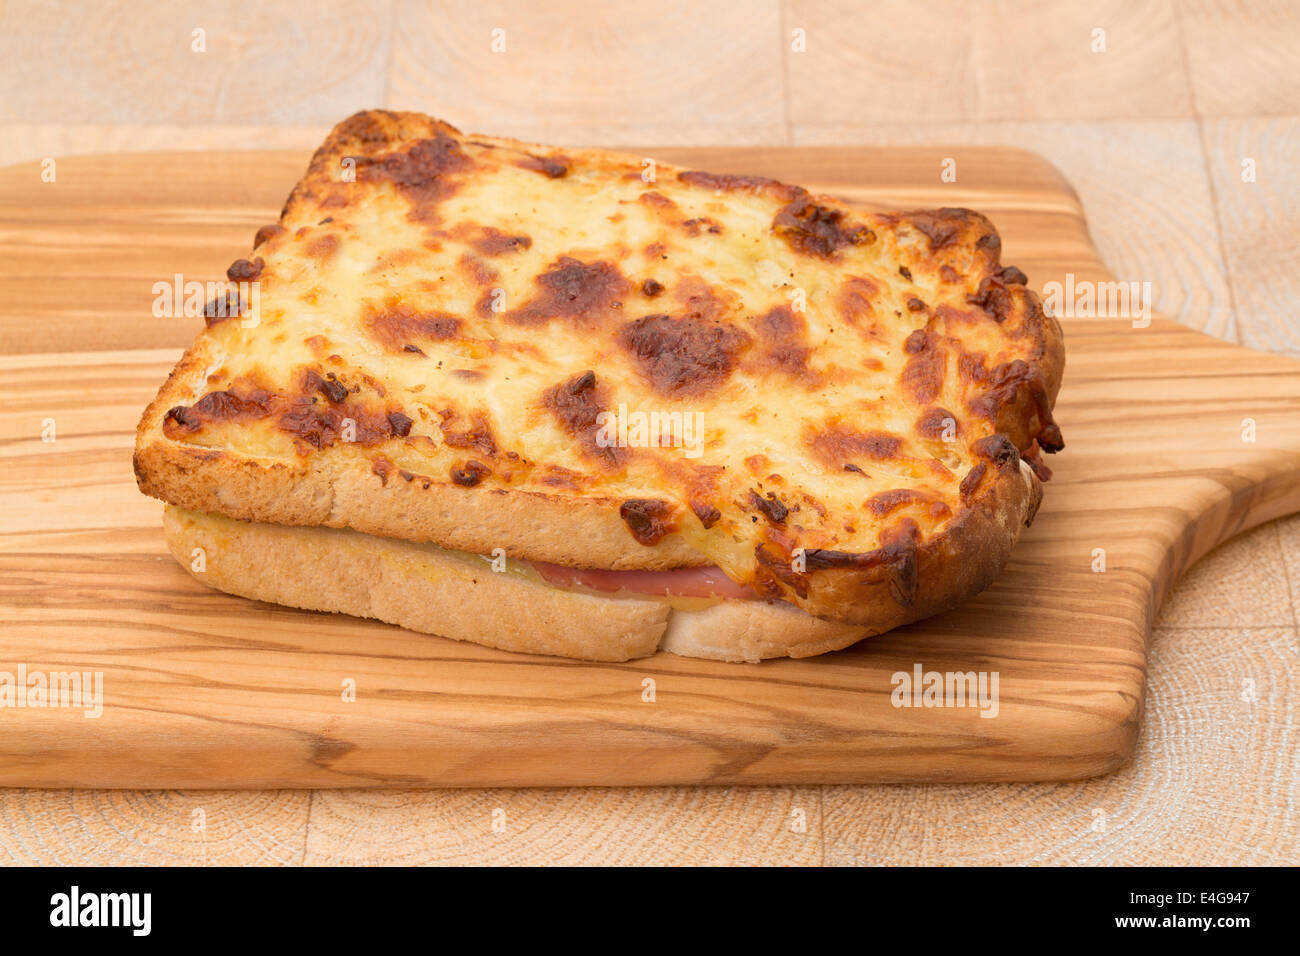 Un sandwich au jambon grillé et fromage ou panini - studio shot Banque D'Images